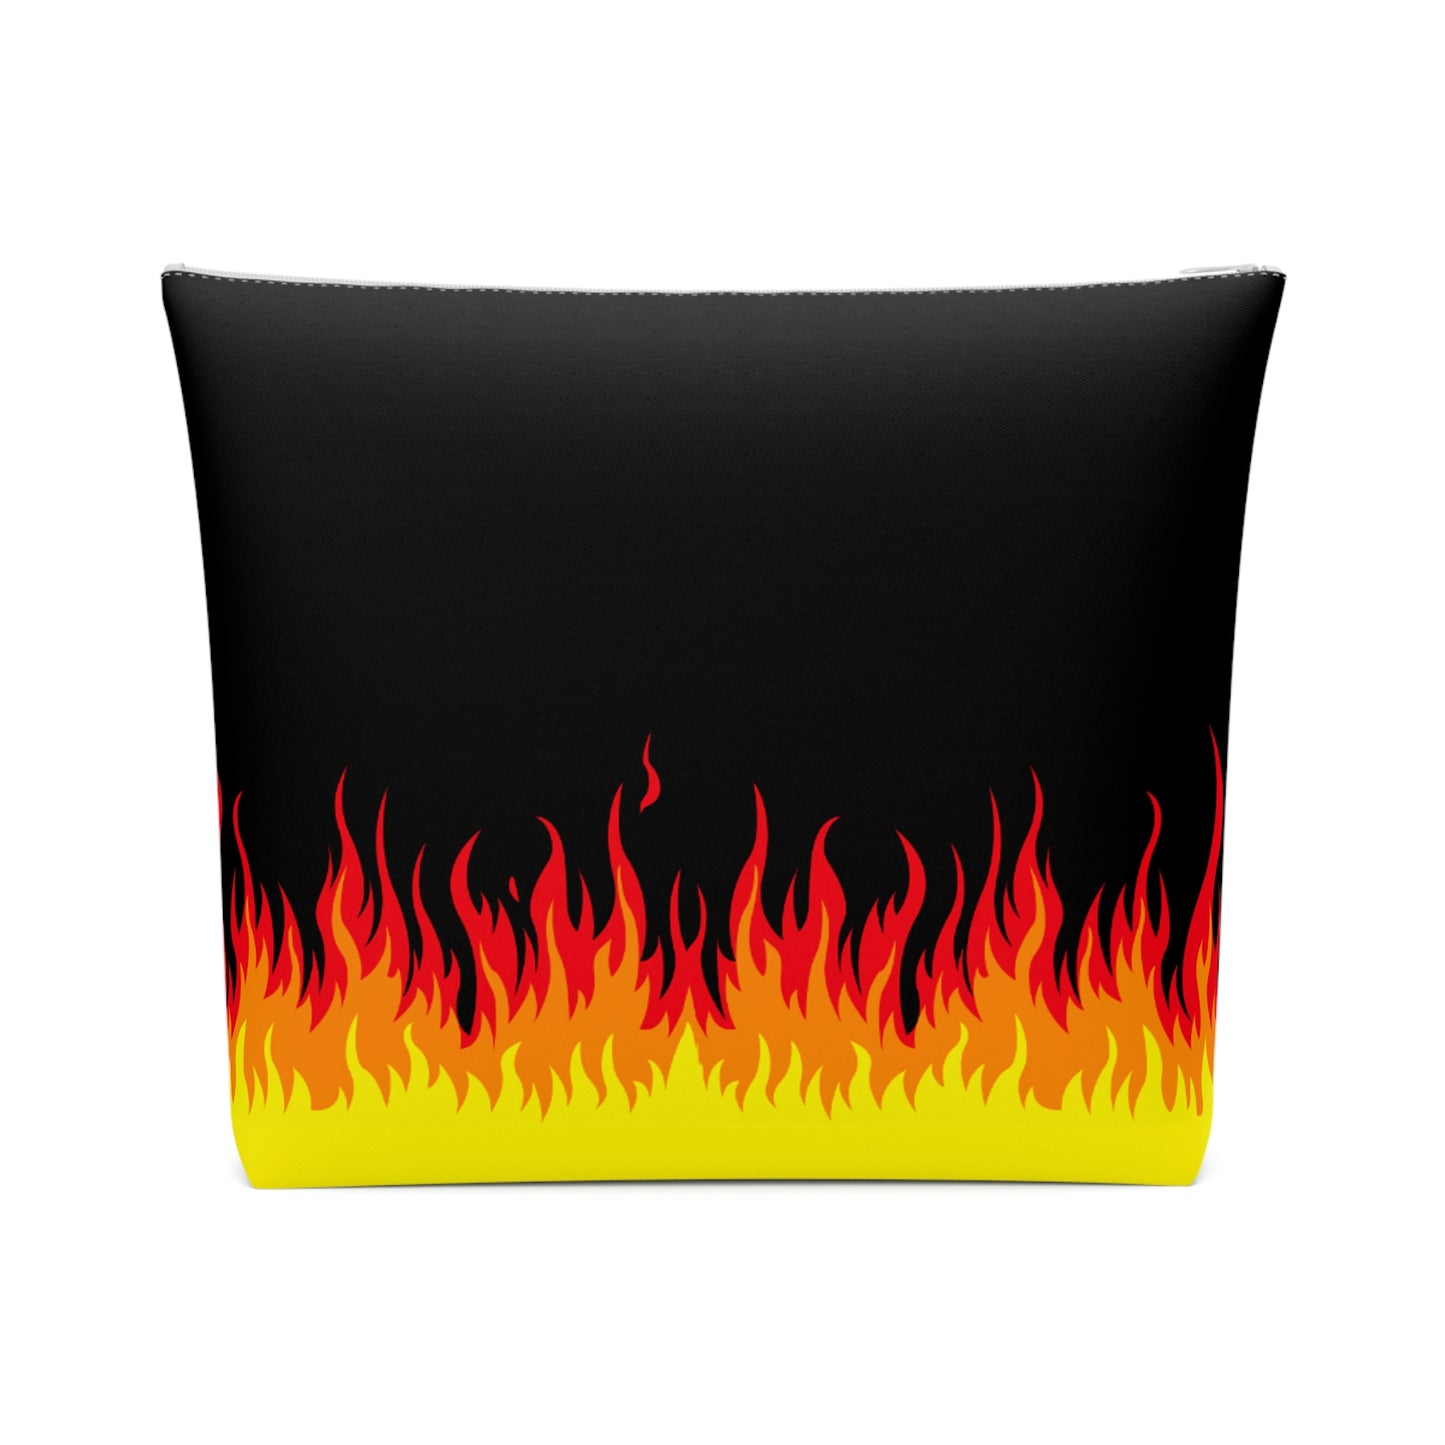 Lit Flames of Hell Retro Flames Punk Makeup Bag